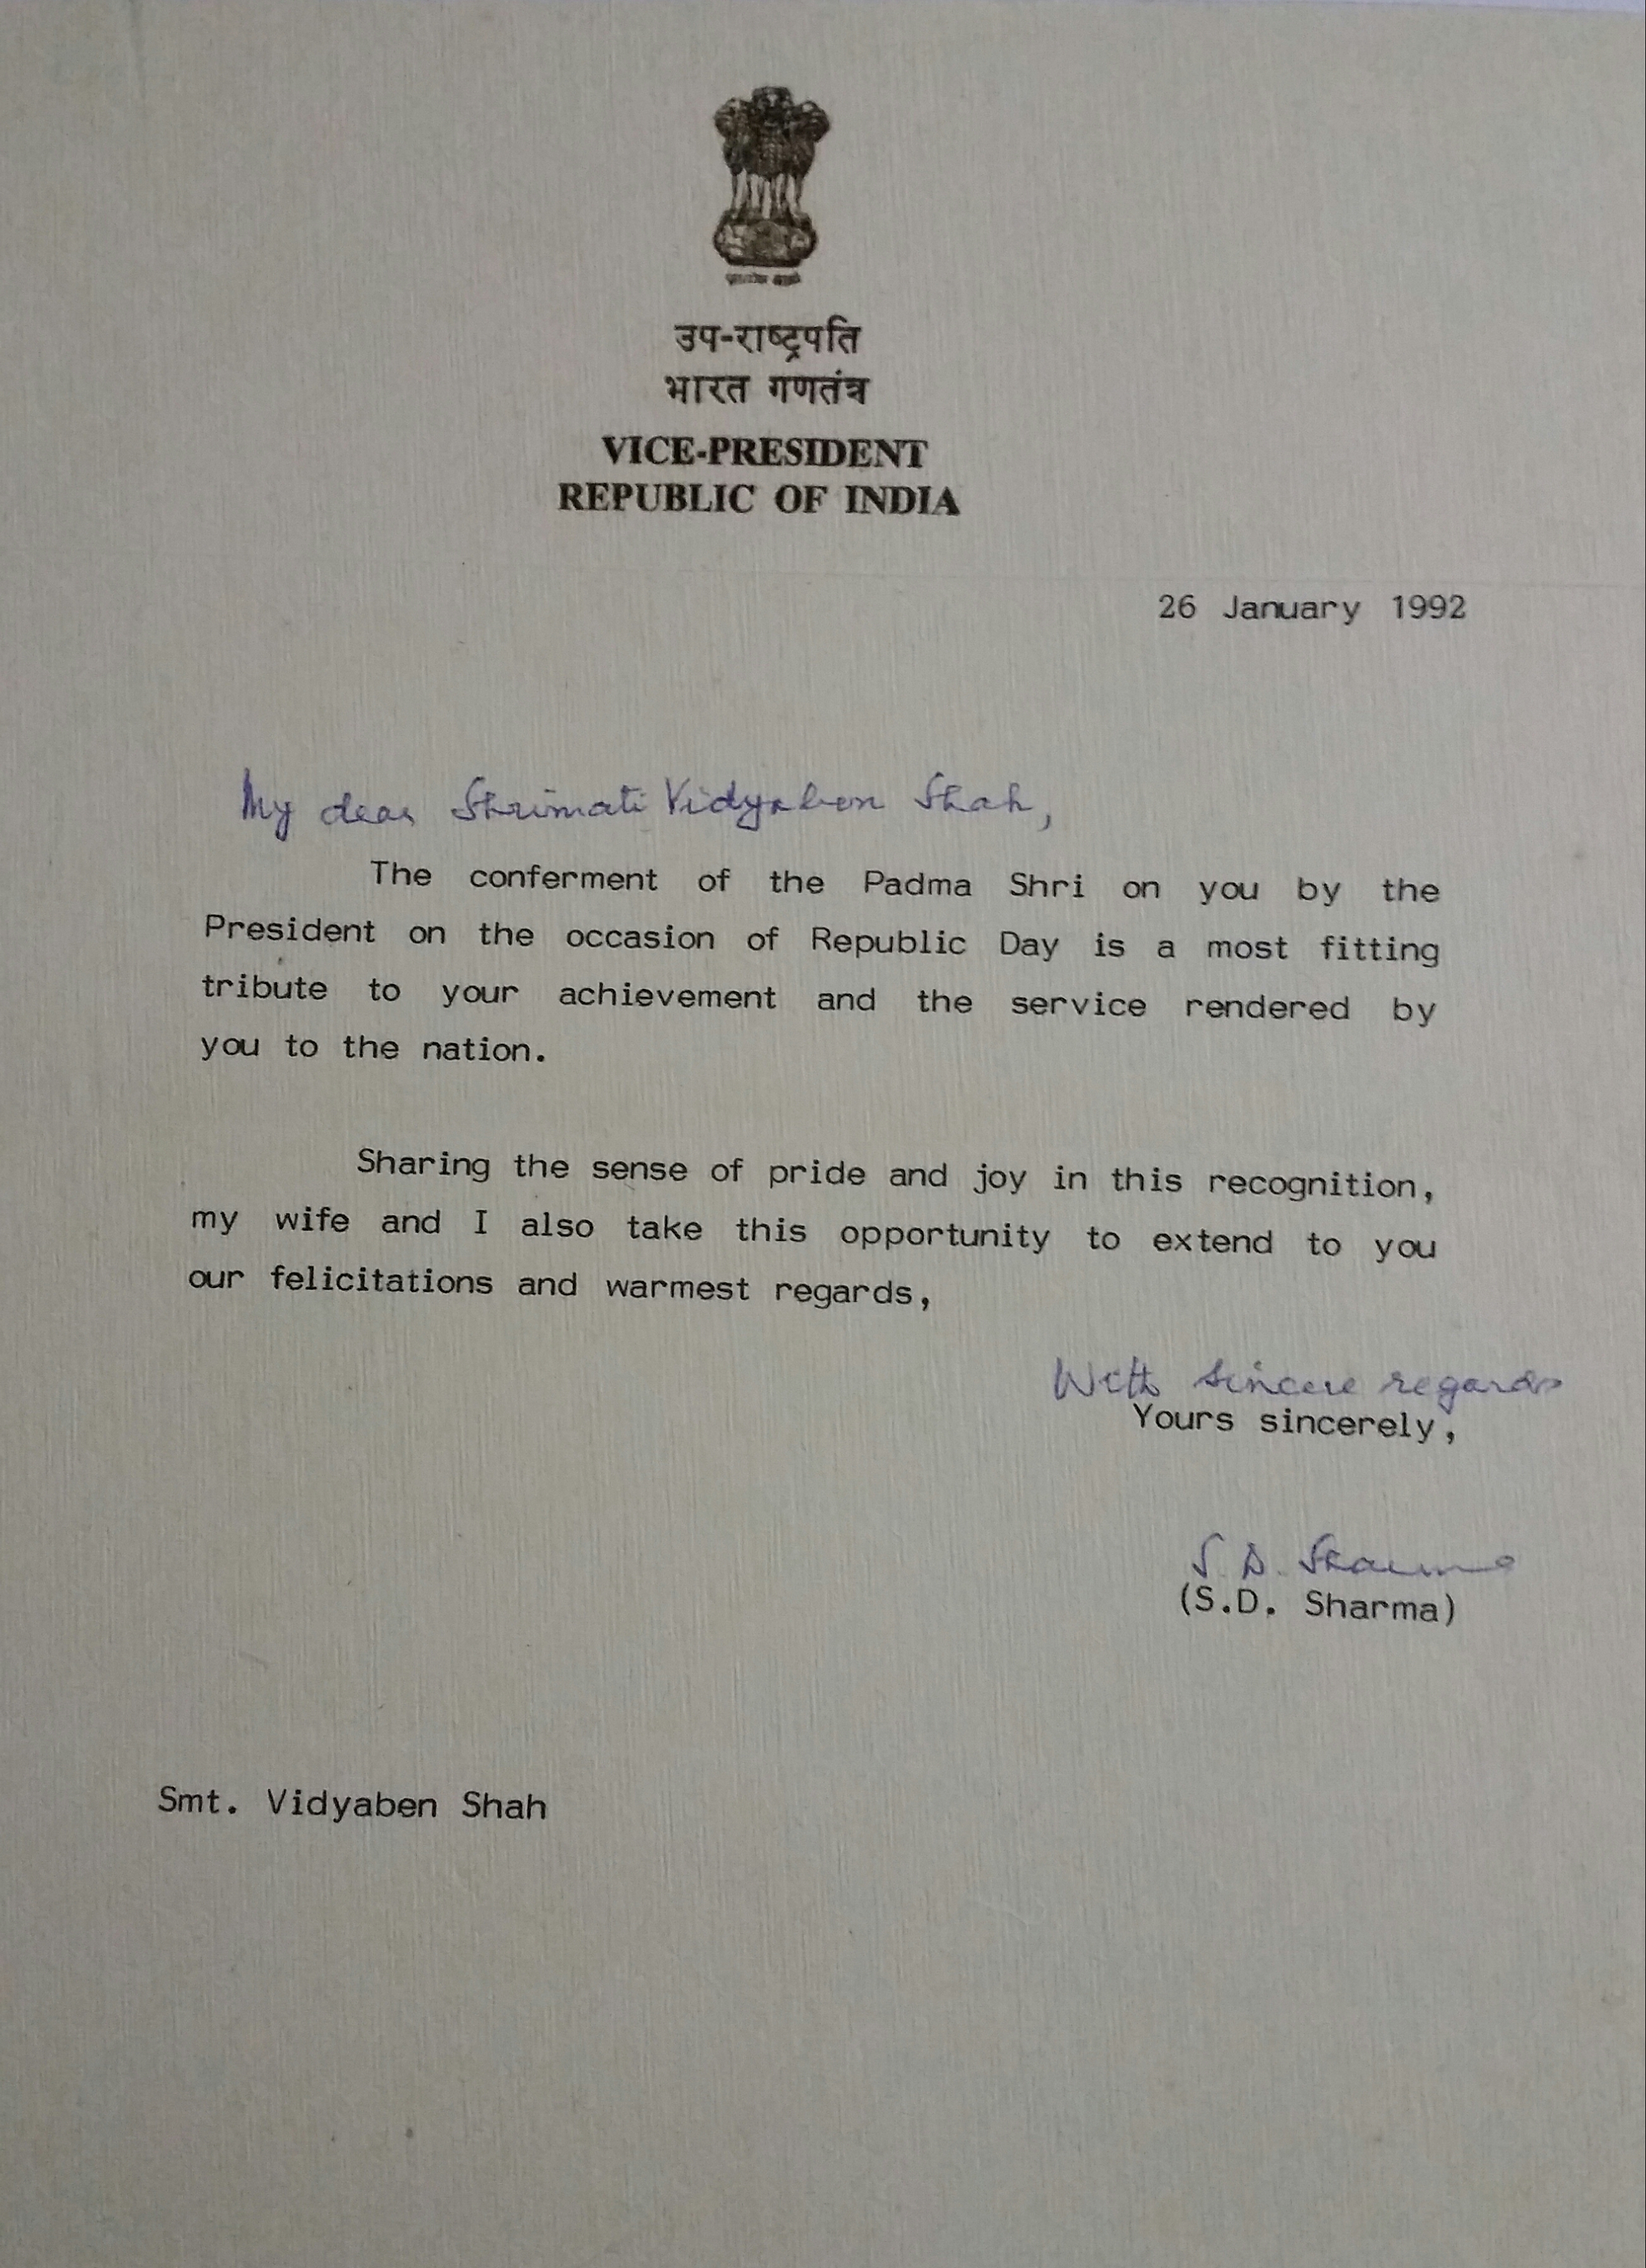 Letter from Shri S D Sharma